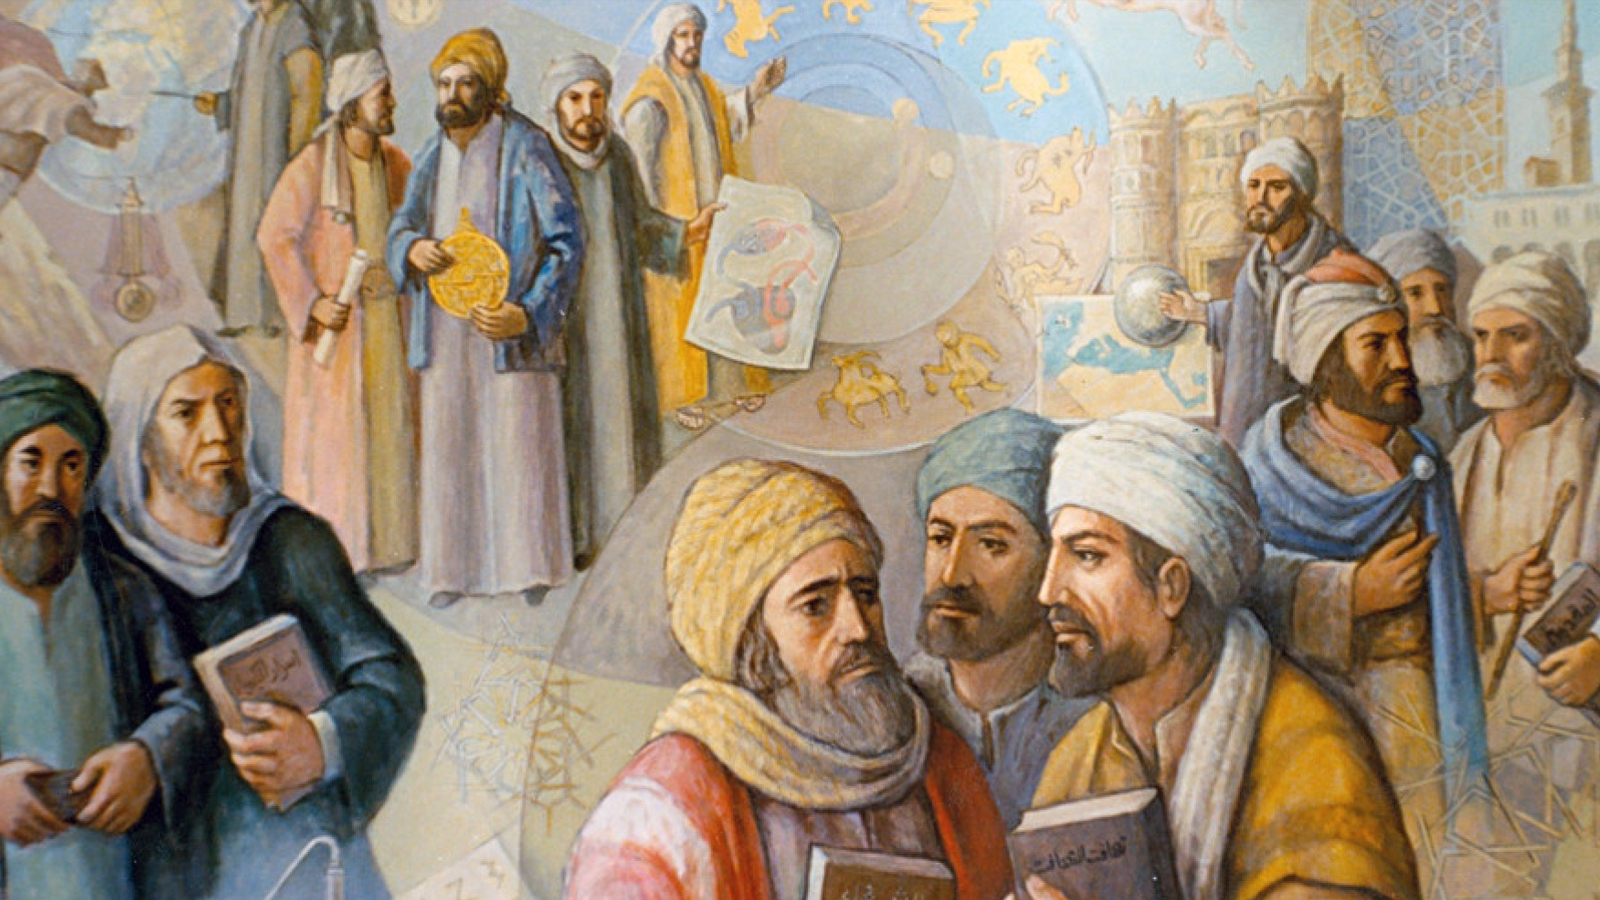 أبدع العلماء المسلمون علوماً جديدة كعلم الصيدلة وعلم الجبر، الذي استنبط الخوارزمي قواعده من الآيات القرآنية التي تتحدث عن الميراث وكيفية توزيعه